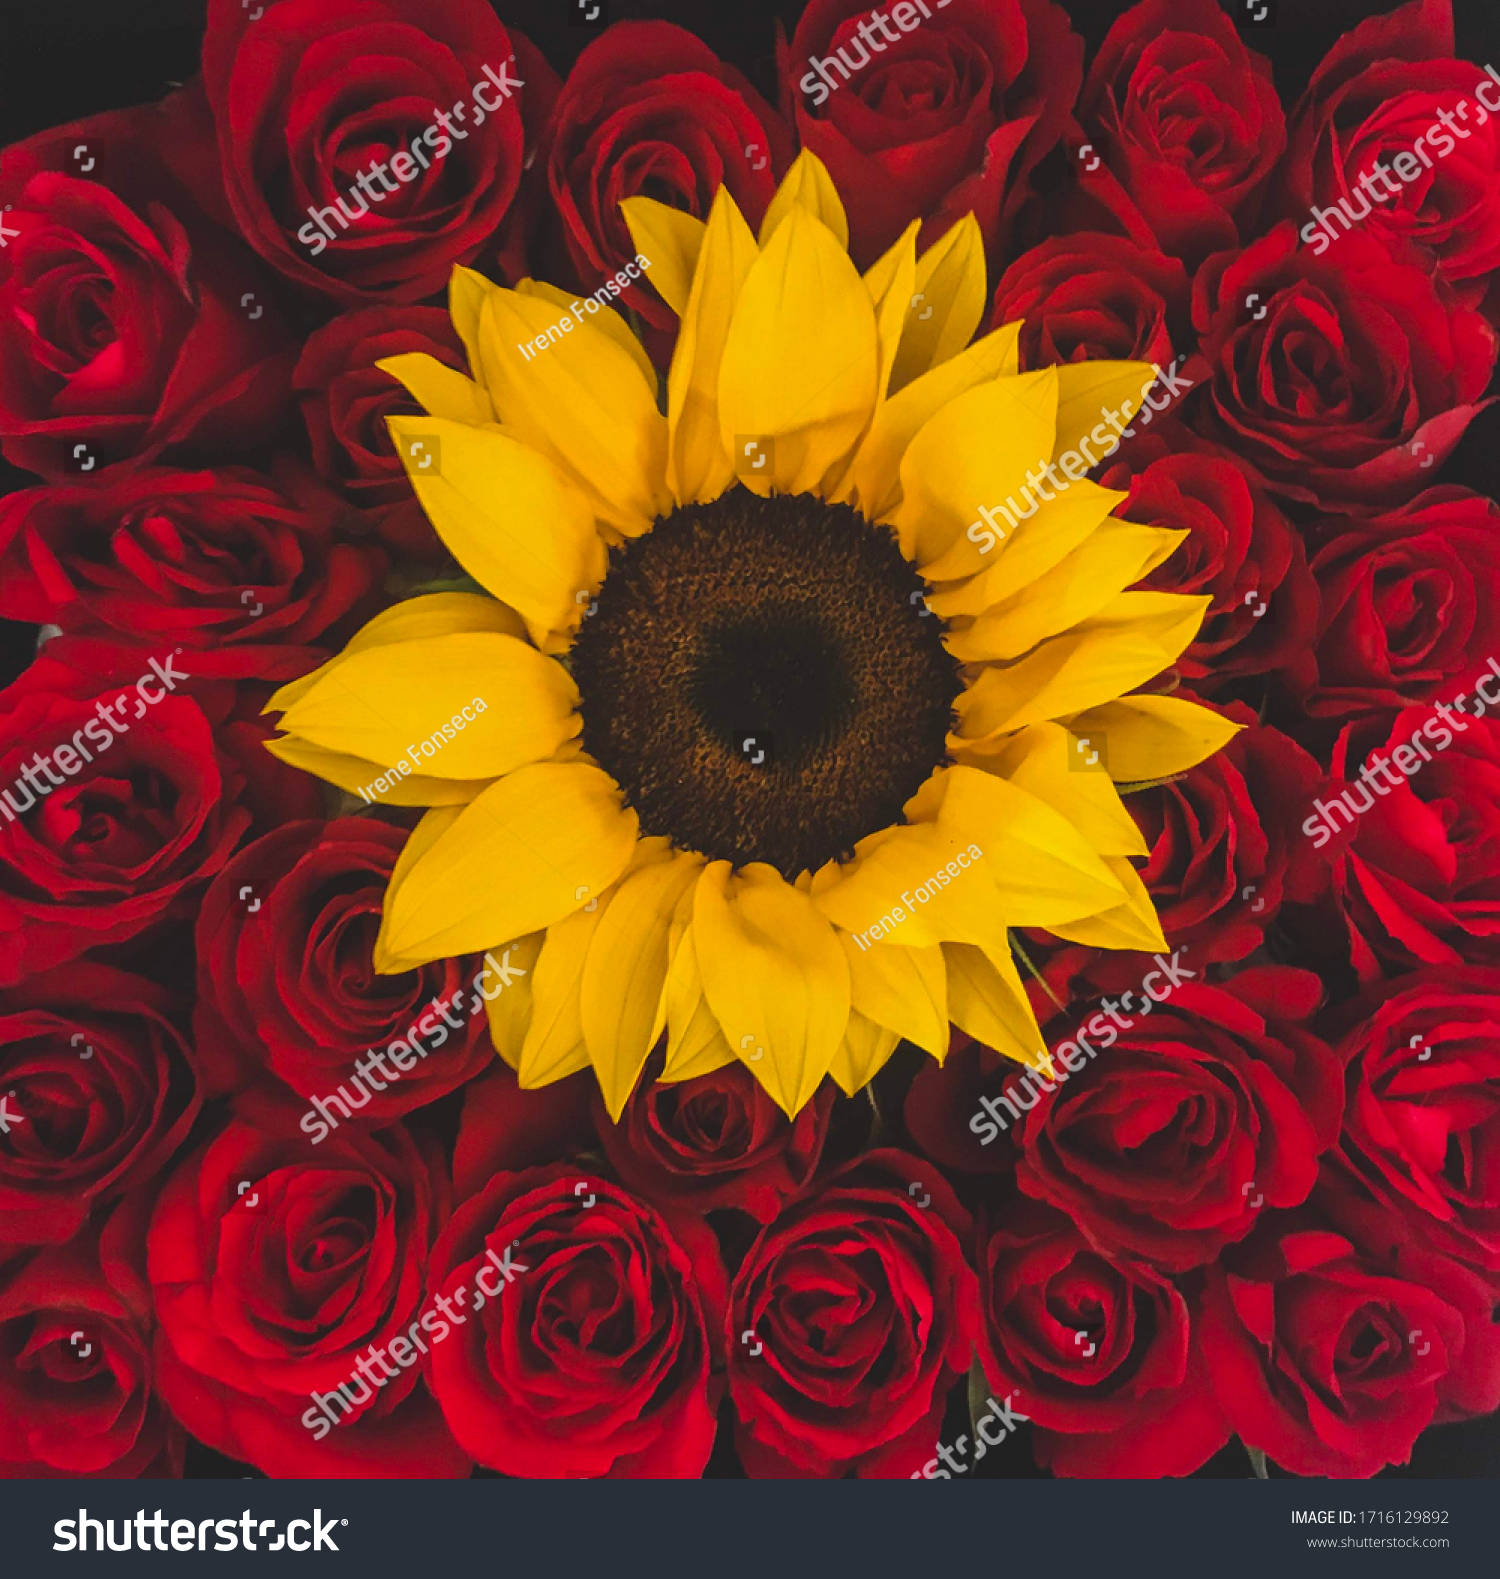 Lovely flovers   Sunflowers and roses Sunflower wallpaper Red roses  wallpaper